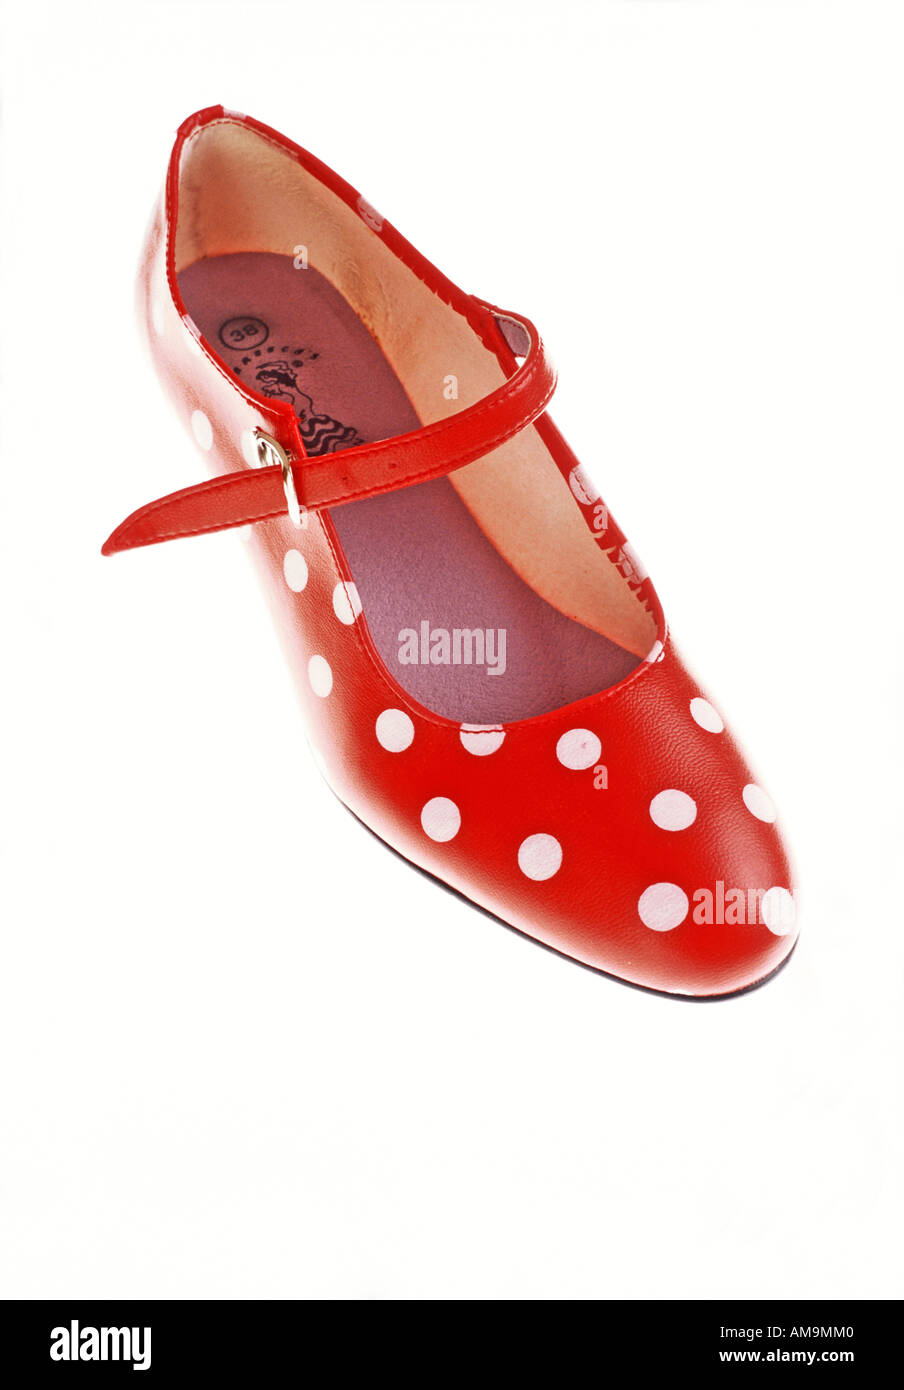 Zapato flamenco rojo